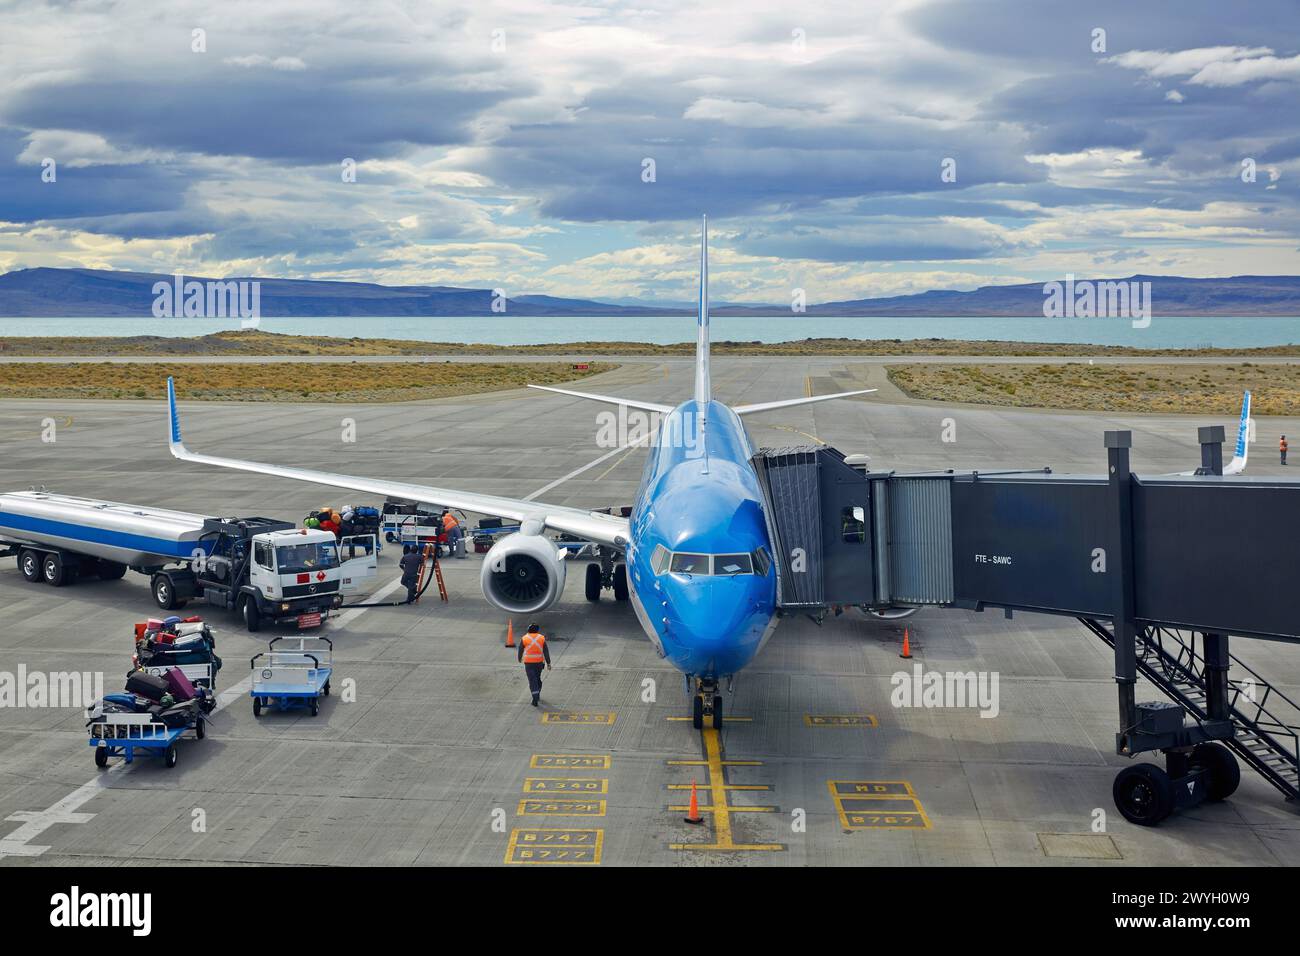 El Calafate Airport. Argentino Lake. Santa Cruz province. Patagonia. Argentina. Stock Photo